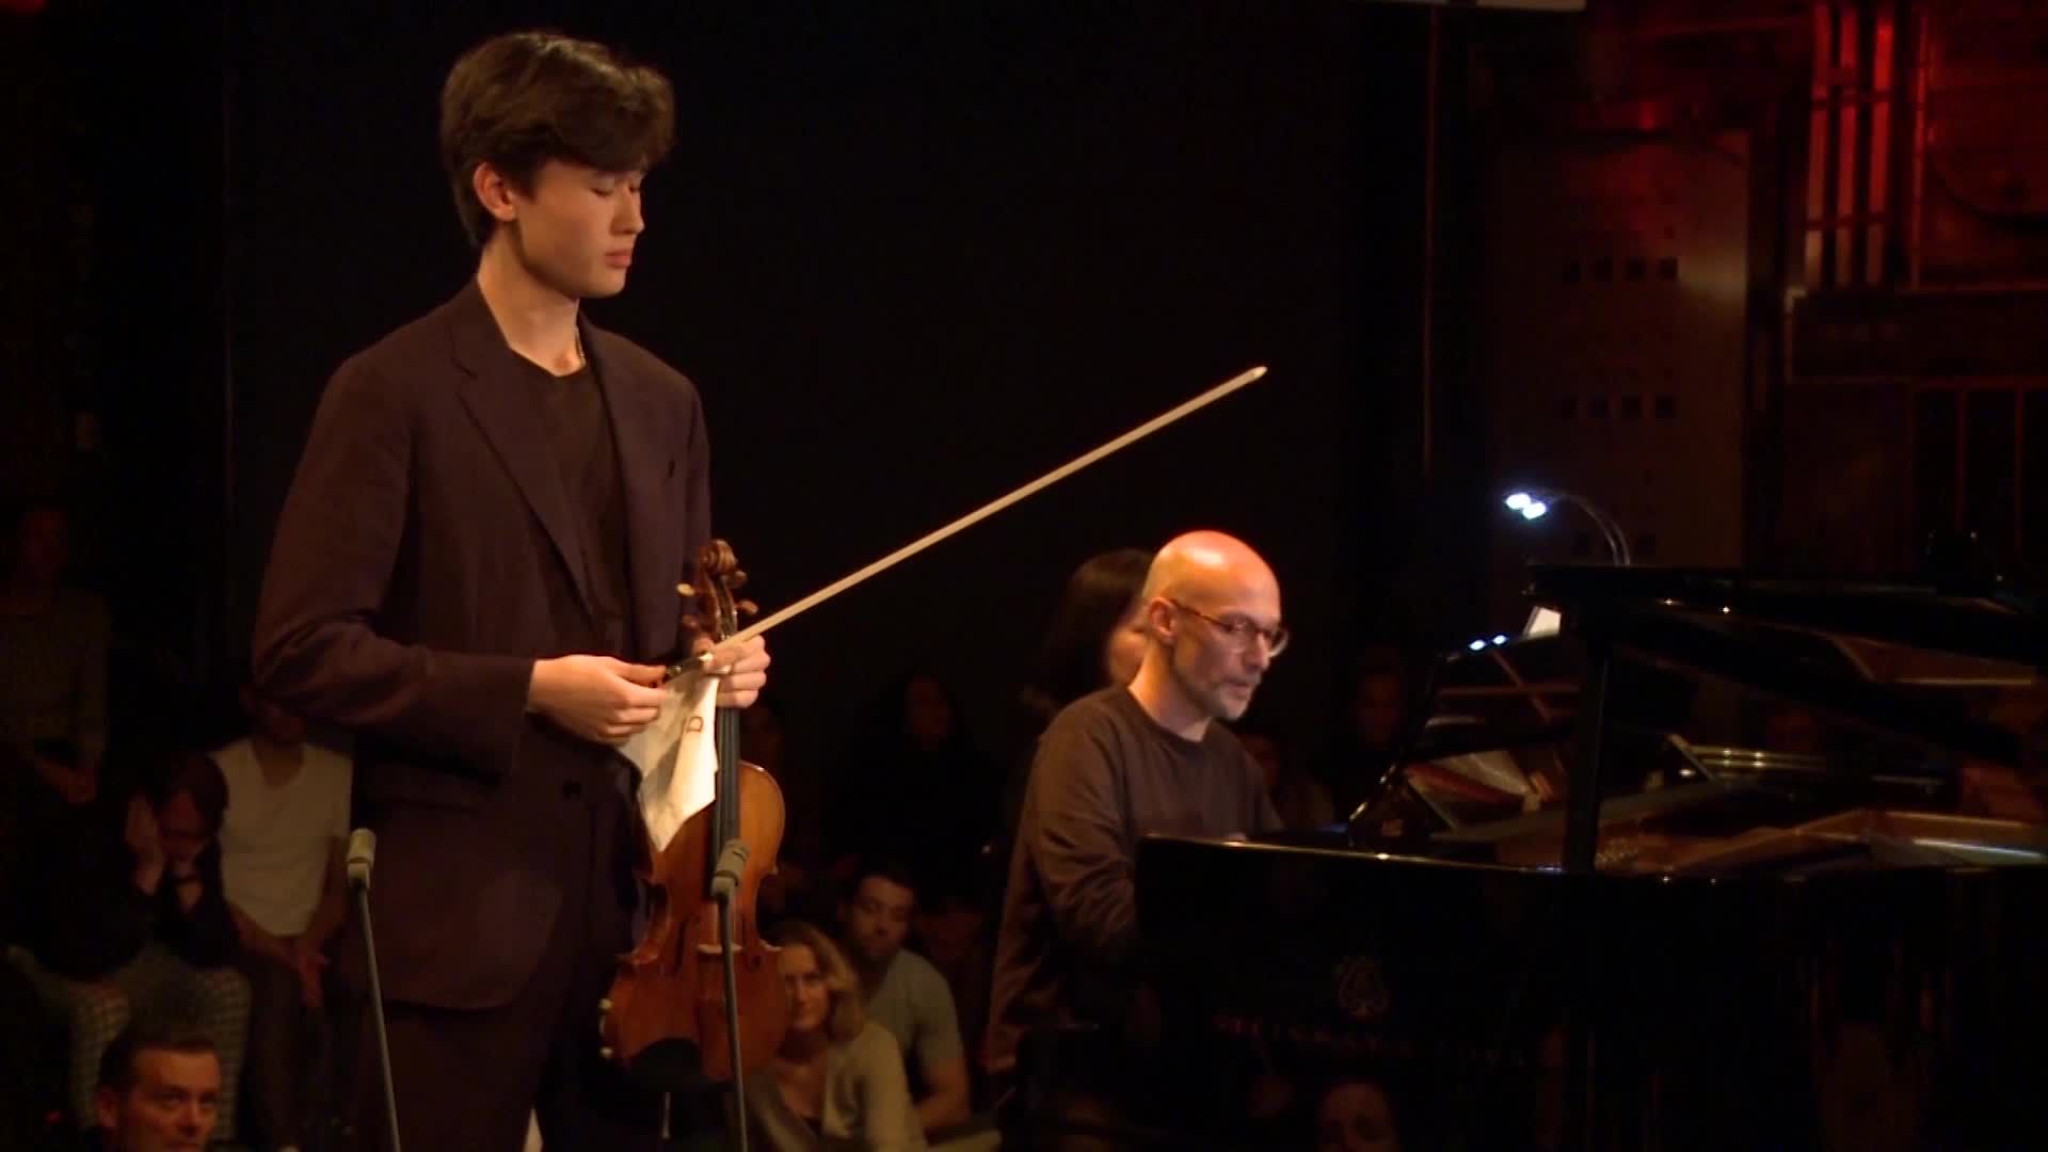 Tchaikovsky: Méditation from Souvenir d'un lieu cher, Op. 42 (Live from Yellow Lounge Berlin)